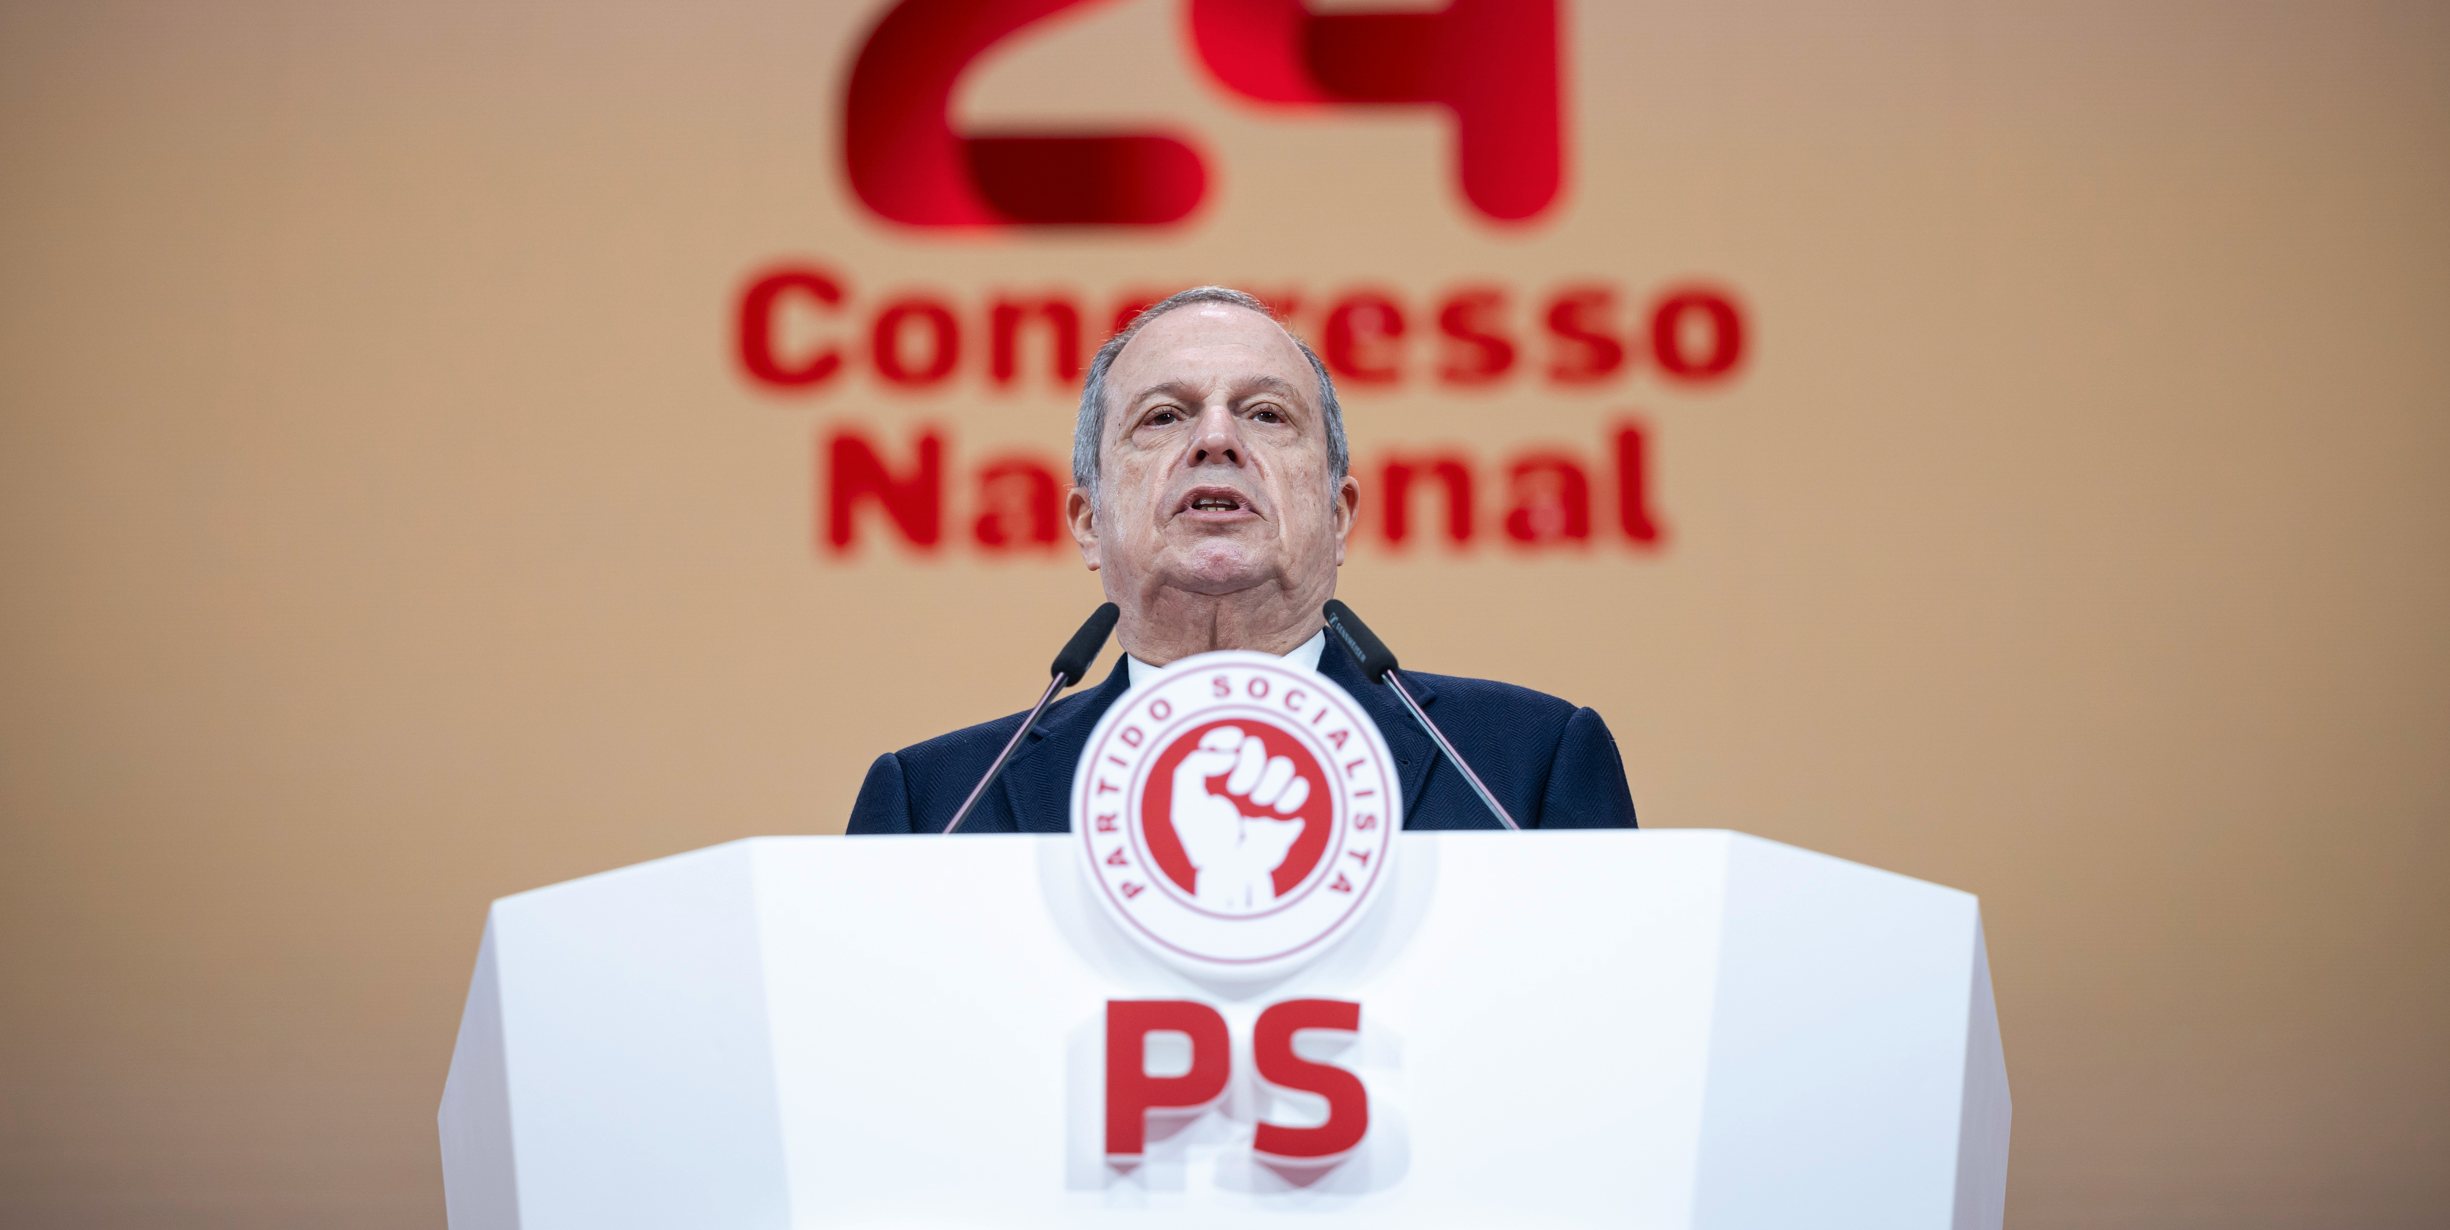 Carlos César discursou este sábado de manhã, no segundo dia de congresso do PS